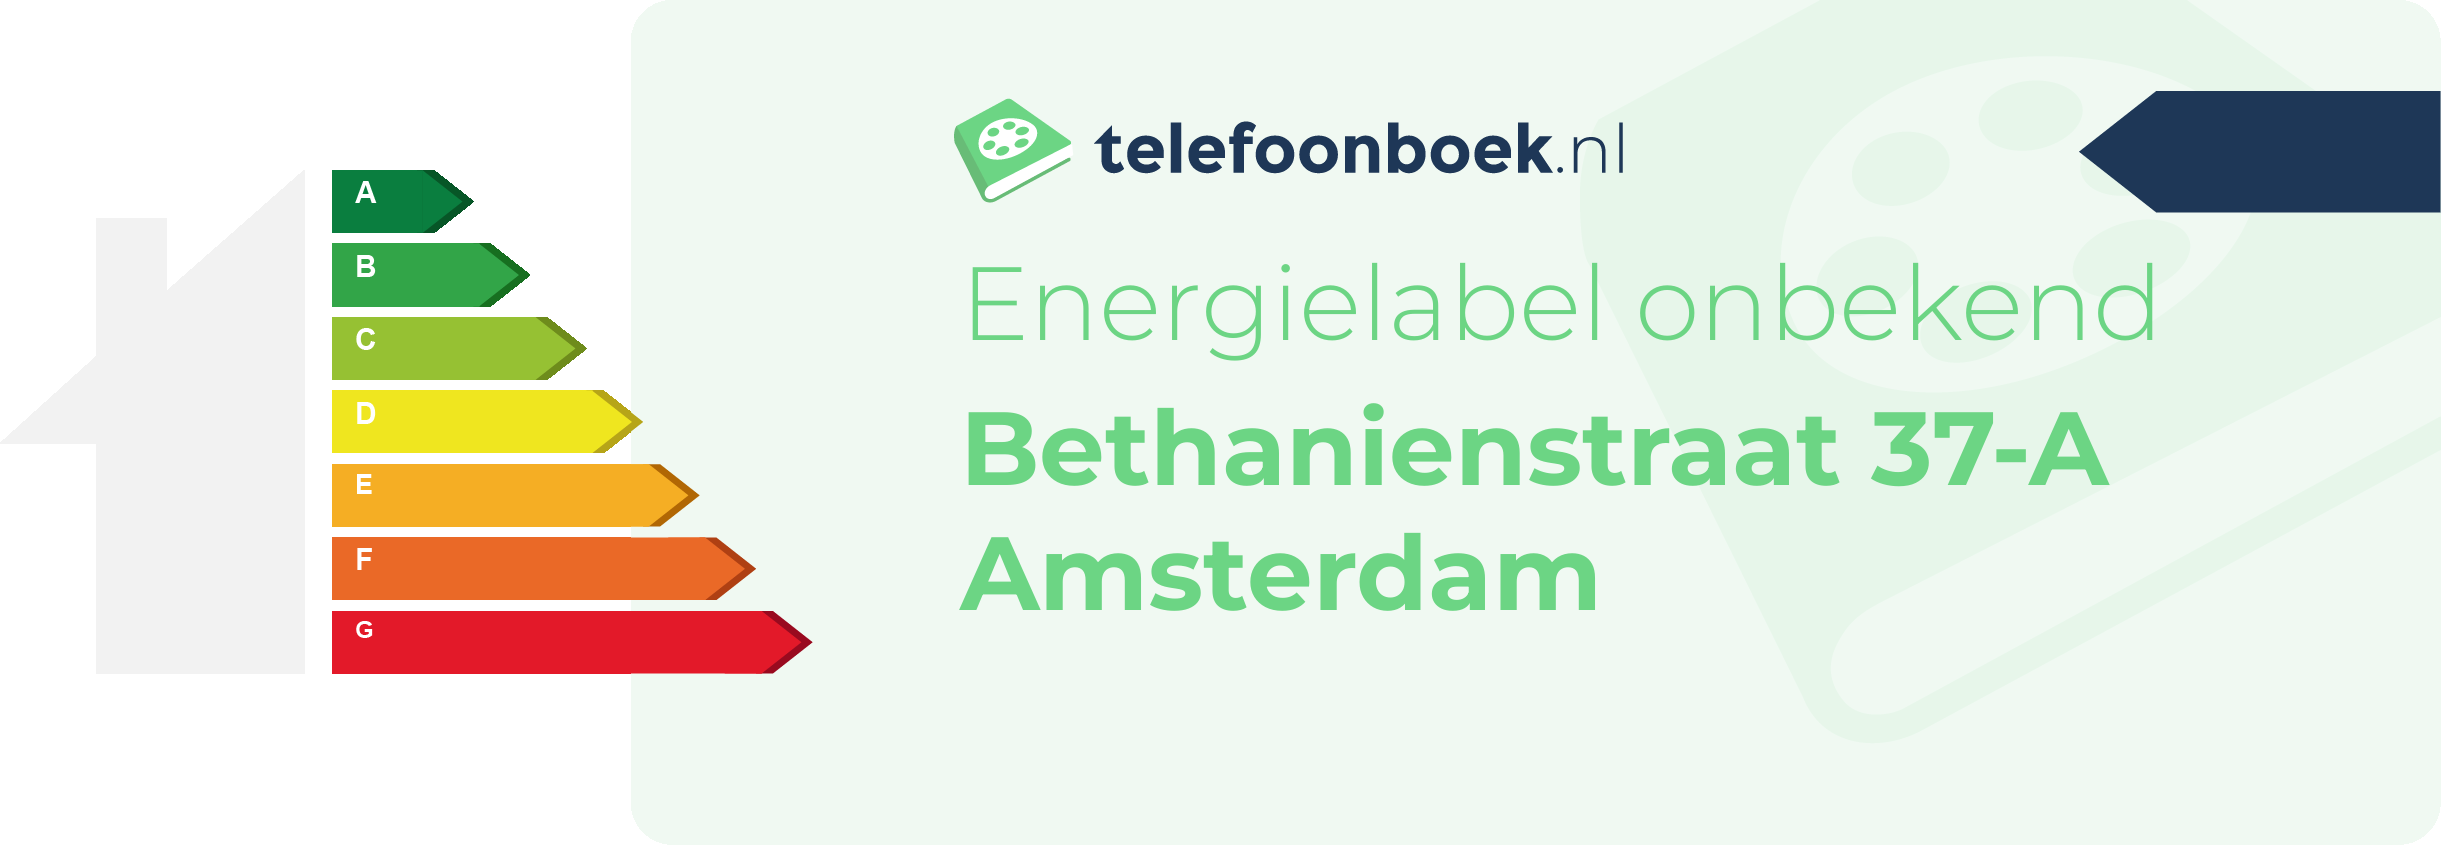 Energielabel Bethanienstraat 37-A Amsterdam